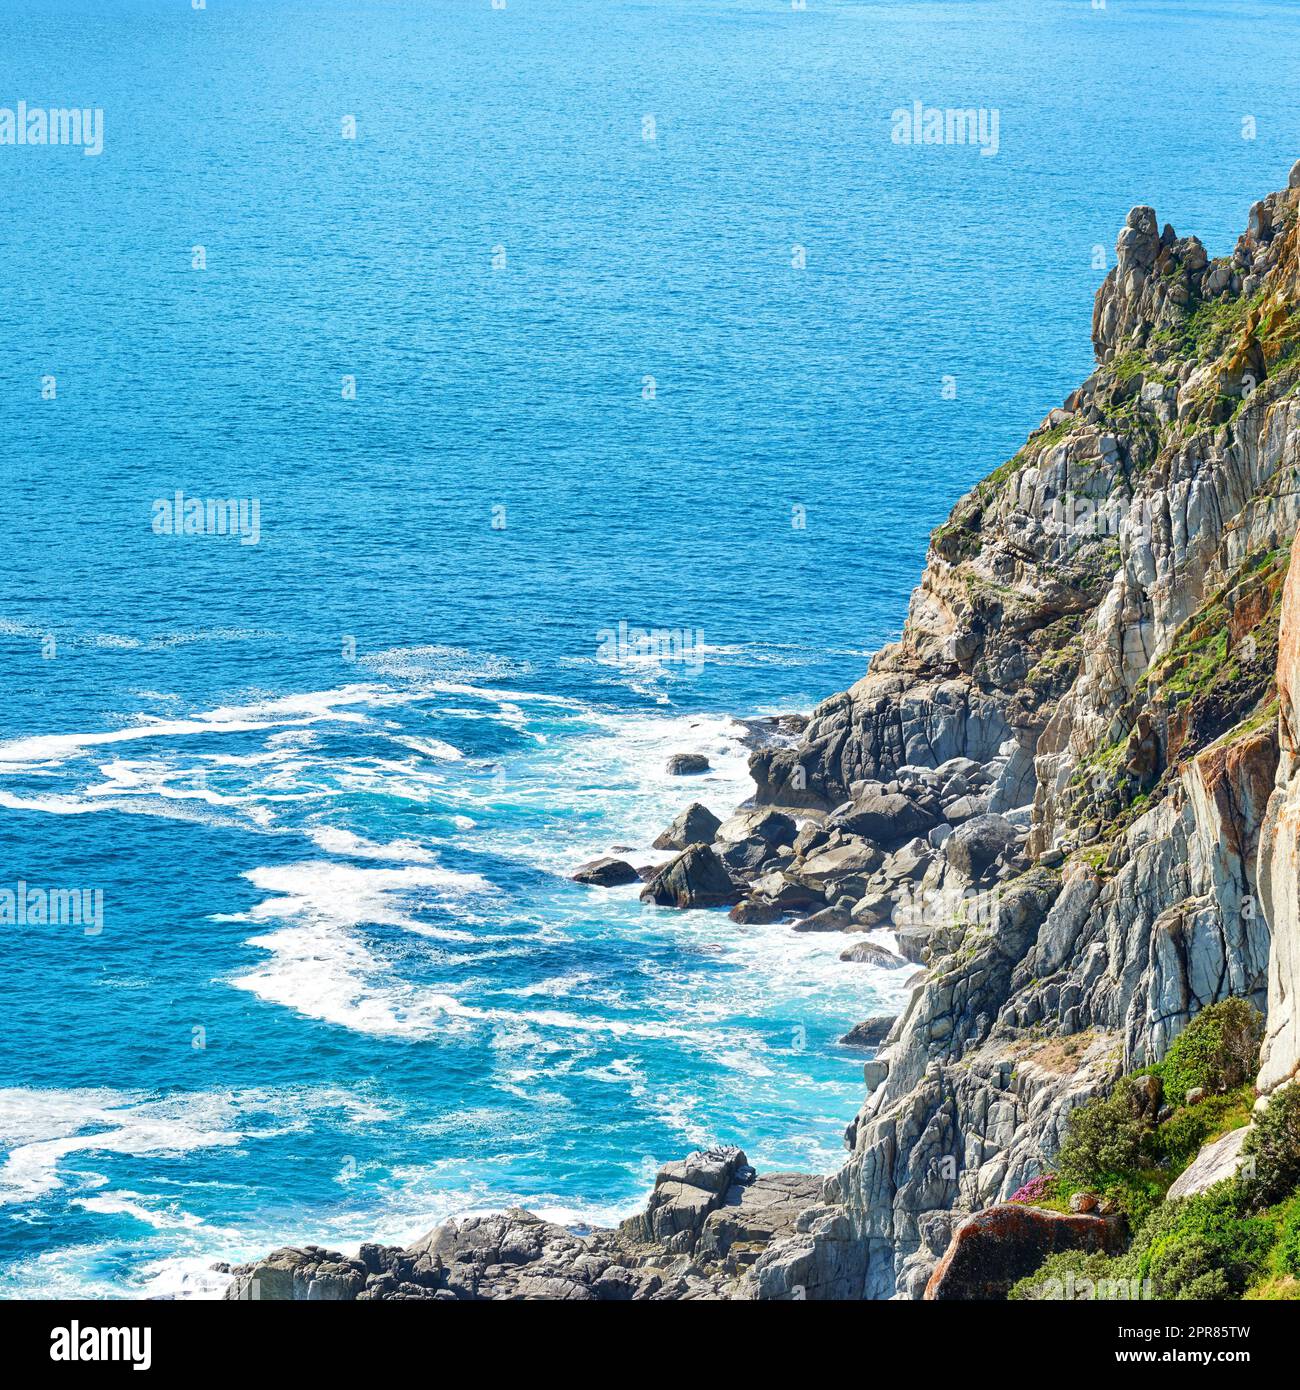 Vue sur la mer, le paysage et la baie de Hout à Cape Town, Afrique du Sud. Bleu océan et mer avec montagnes et copyspace. Voyage et tourisme à l'étranger et à l'étranger pour des vacances d'été Banque D'Images